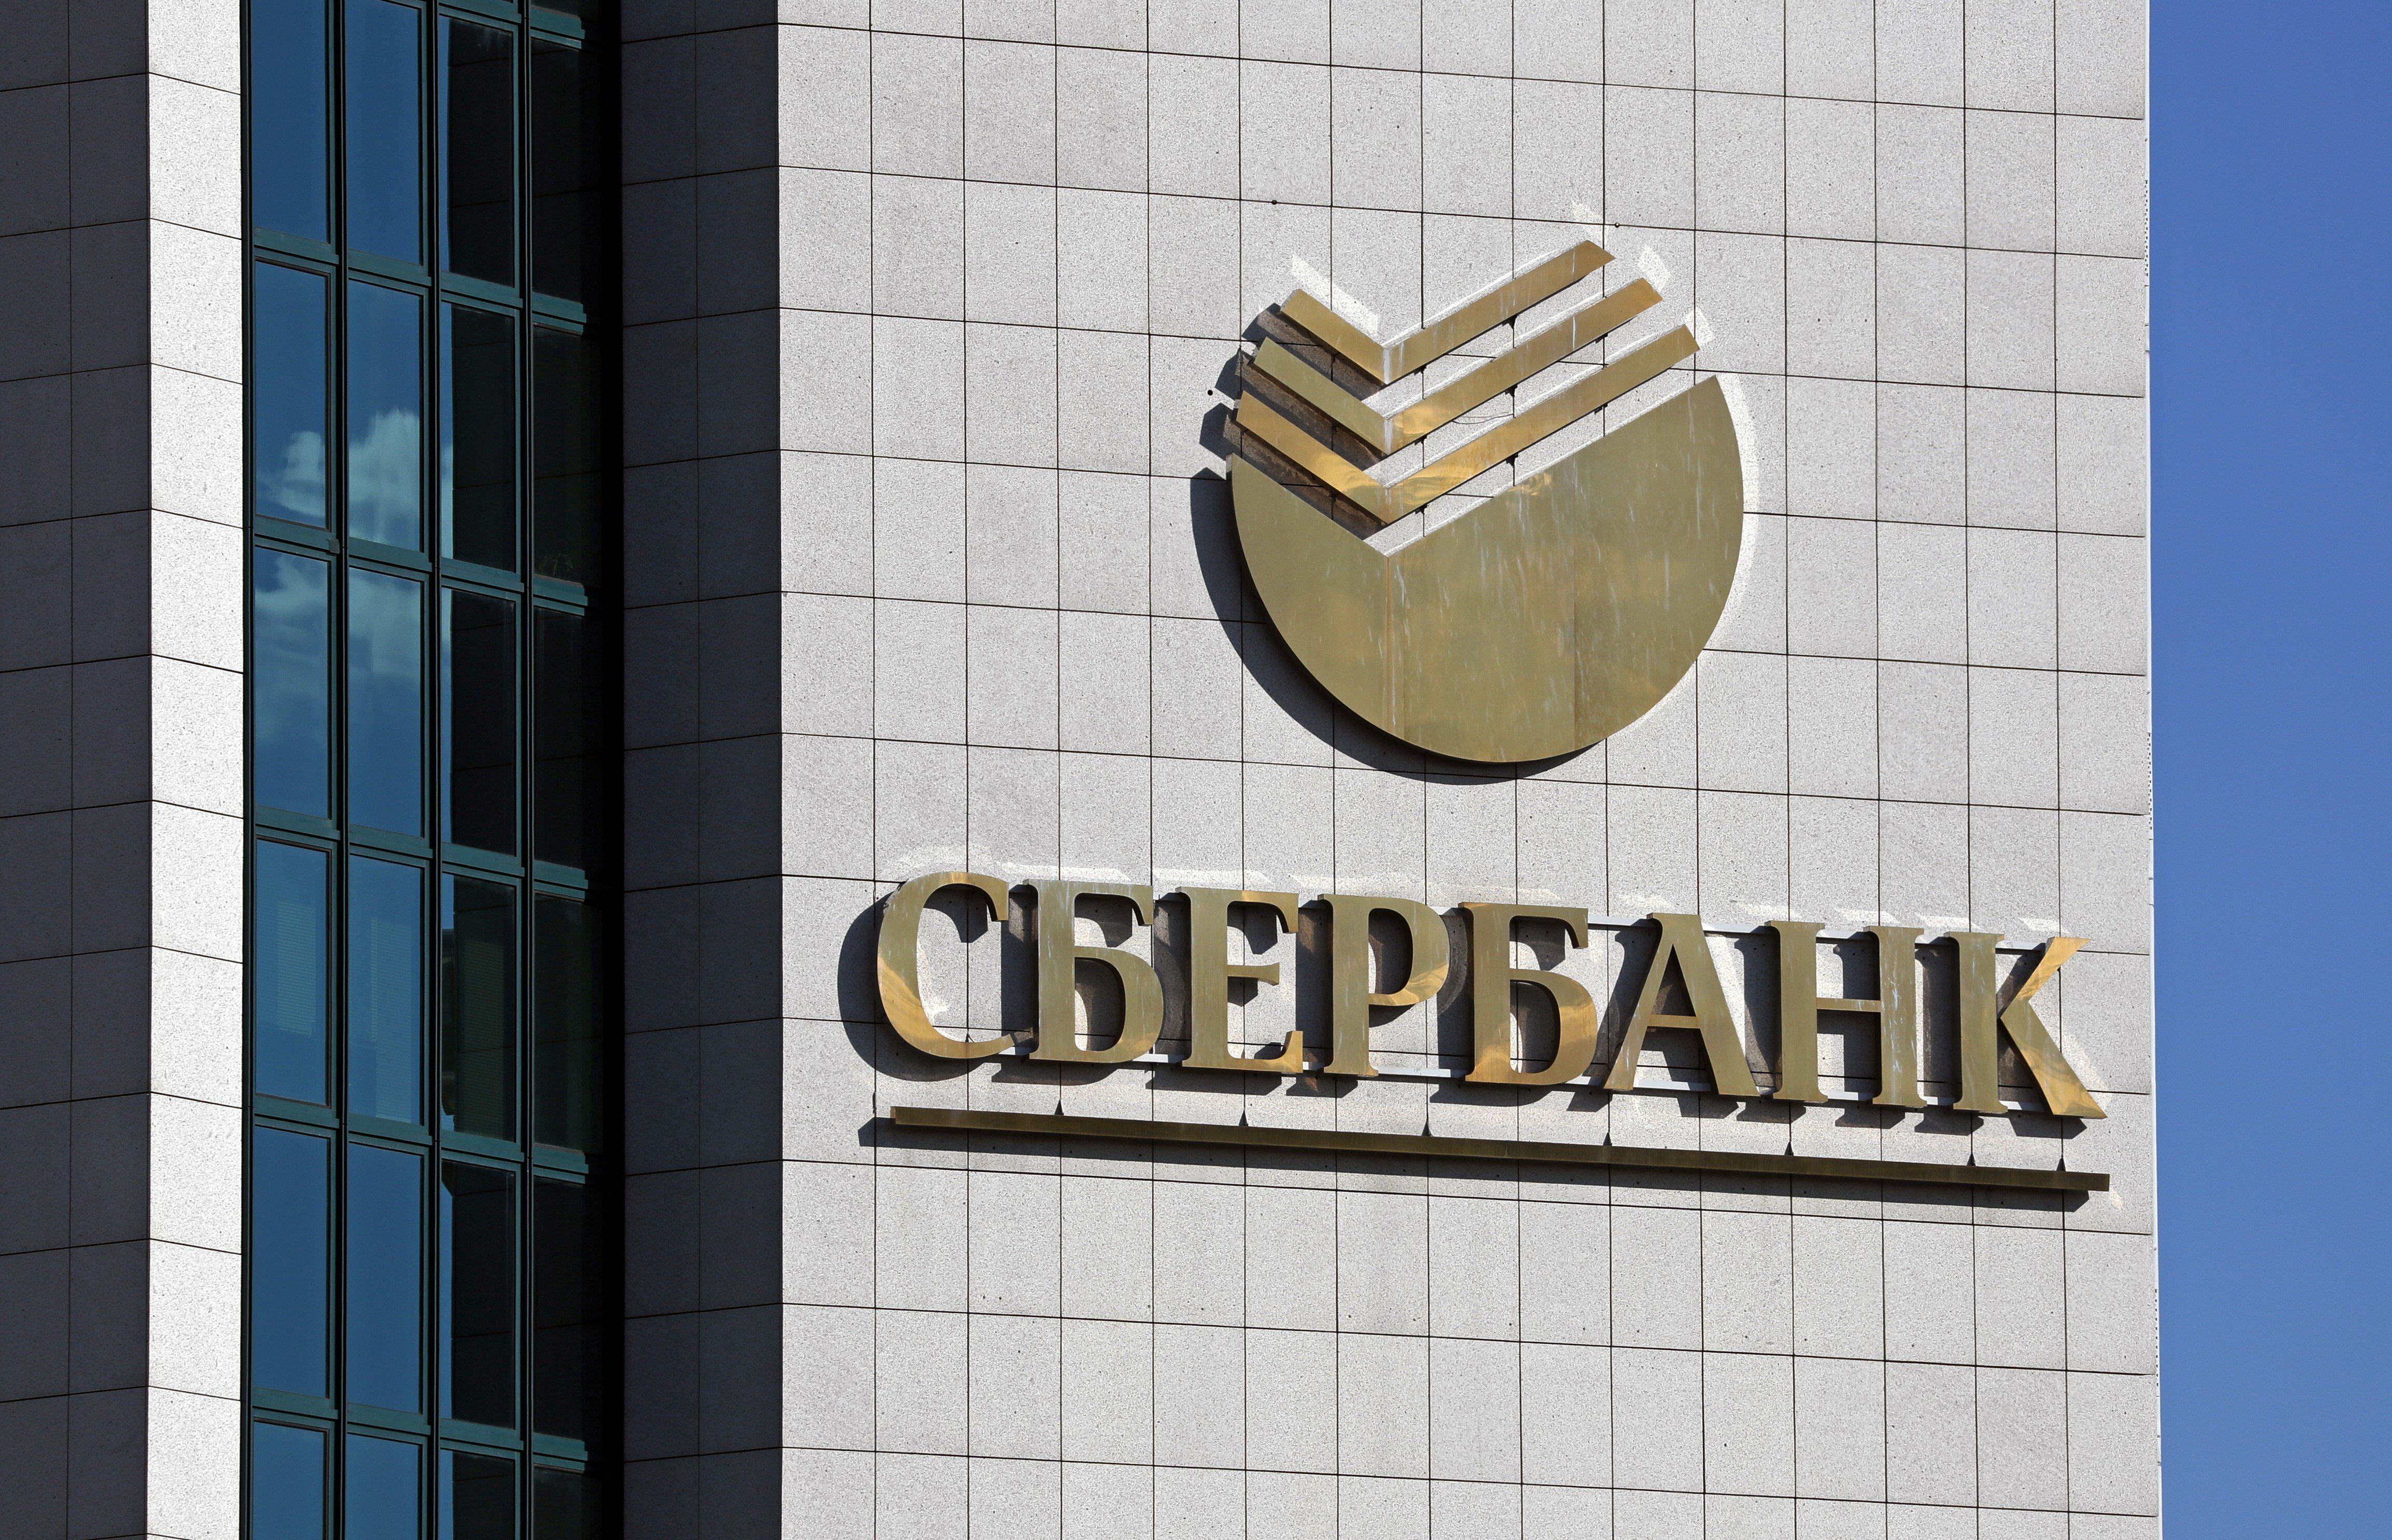 Vista del exterior de la sede Sberbank, el banco más importante de Rusia, en una fotografía de archivo. EFE/Yuri Kochetkov 